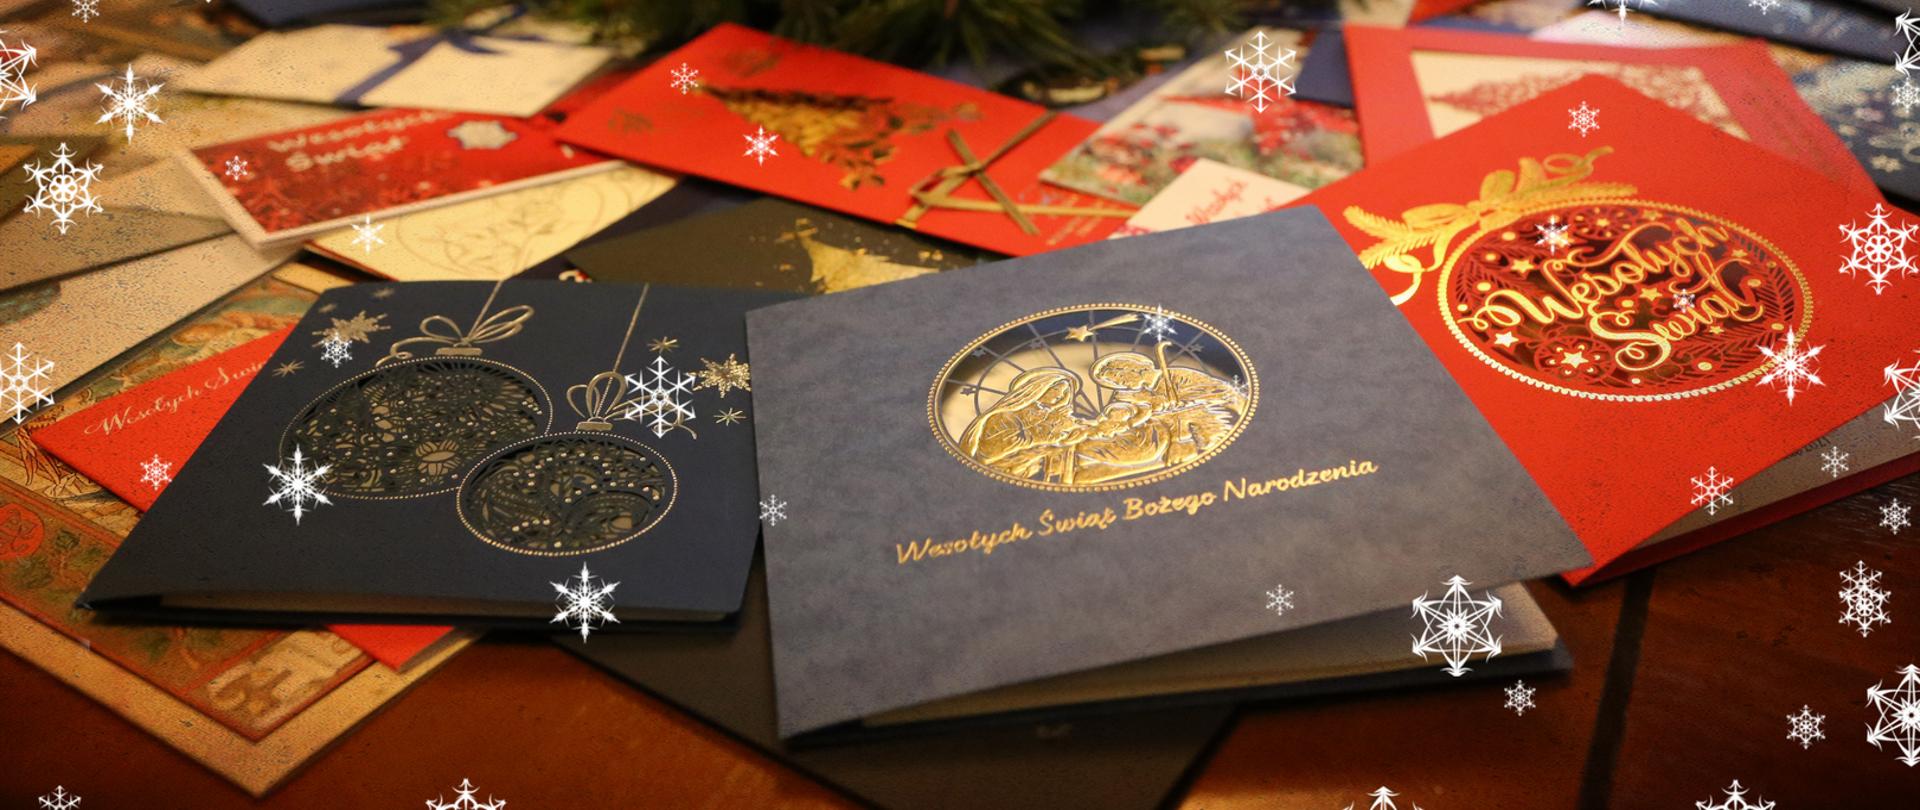 Leżące na blacie biurka kartki świąteczne otrzymane przez Komendanta Centralnej Szkoły PSP. w tle świąteczny stroik. Na fotografii naniesione śnieżynki